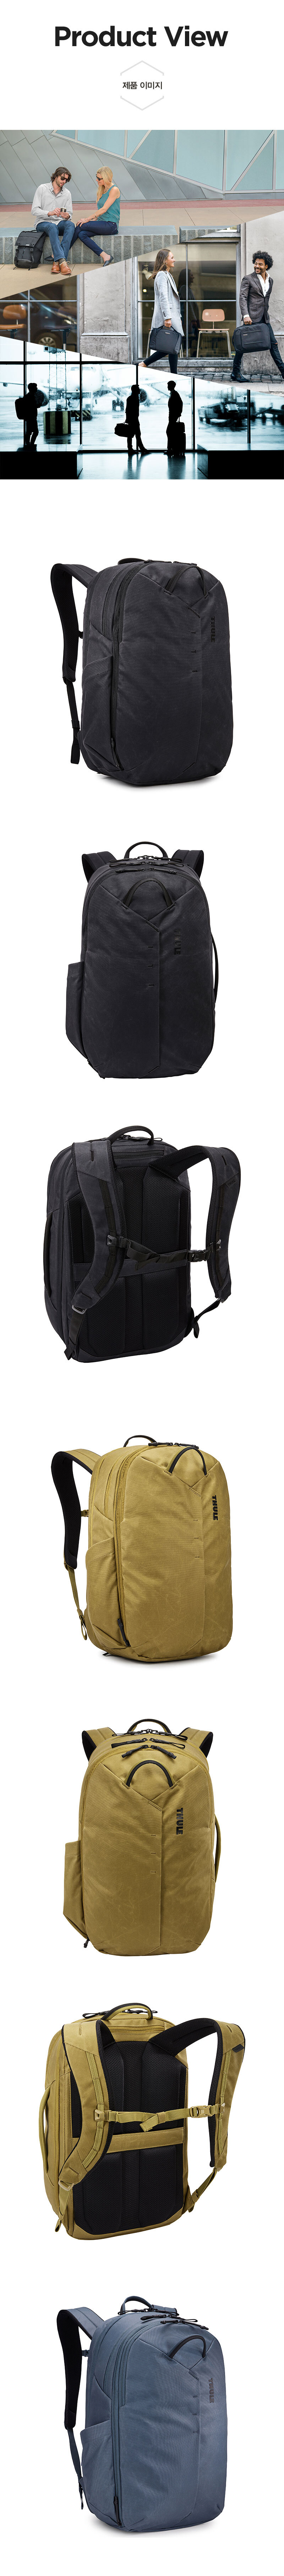 Aion-Backpack-28-3.jpg